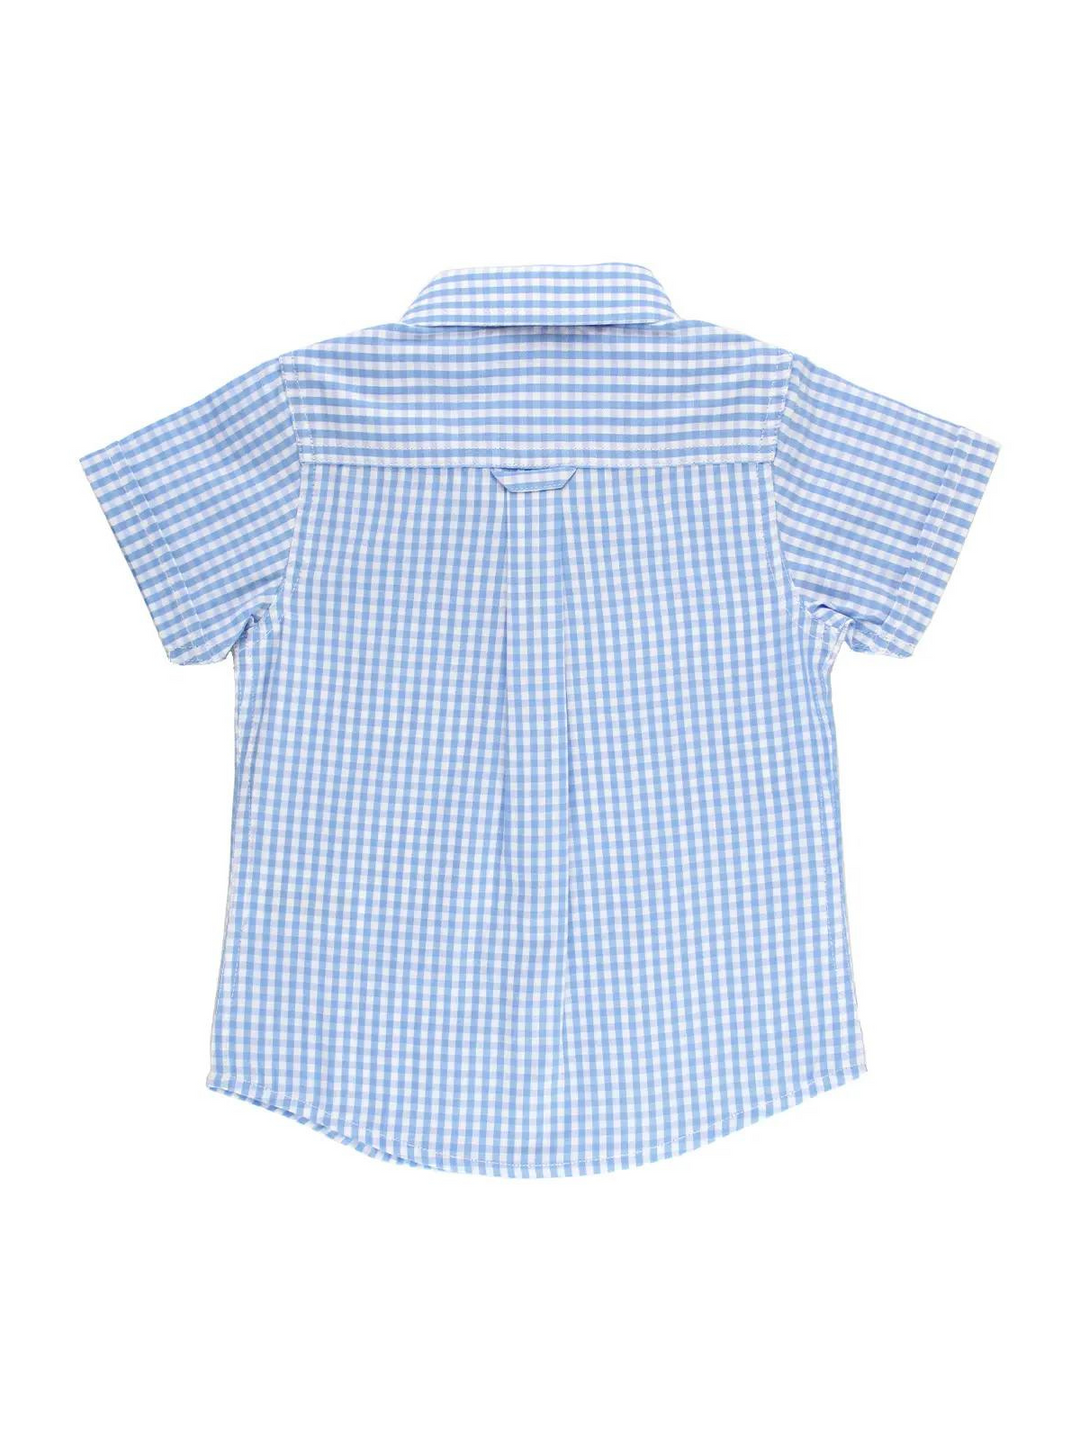 Cornflower Blue Gingham Shirt | Rugged Butts